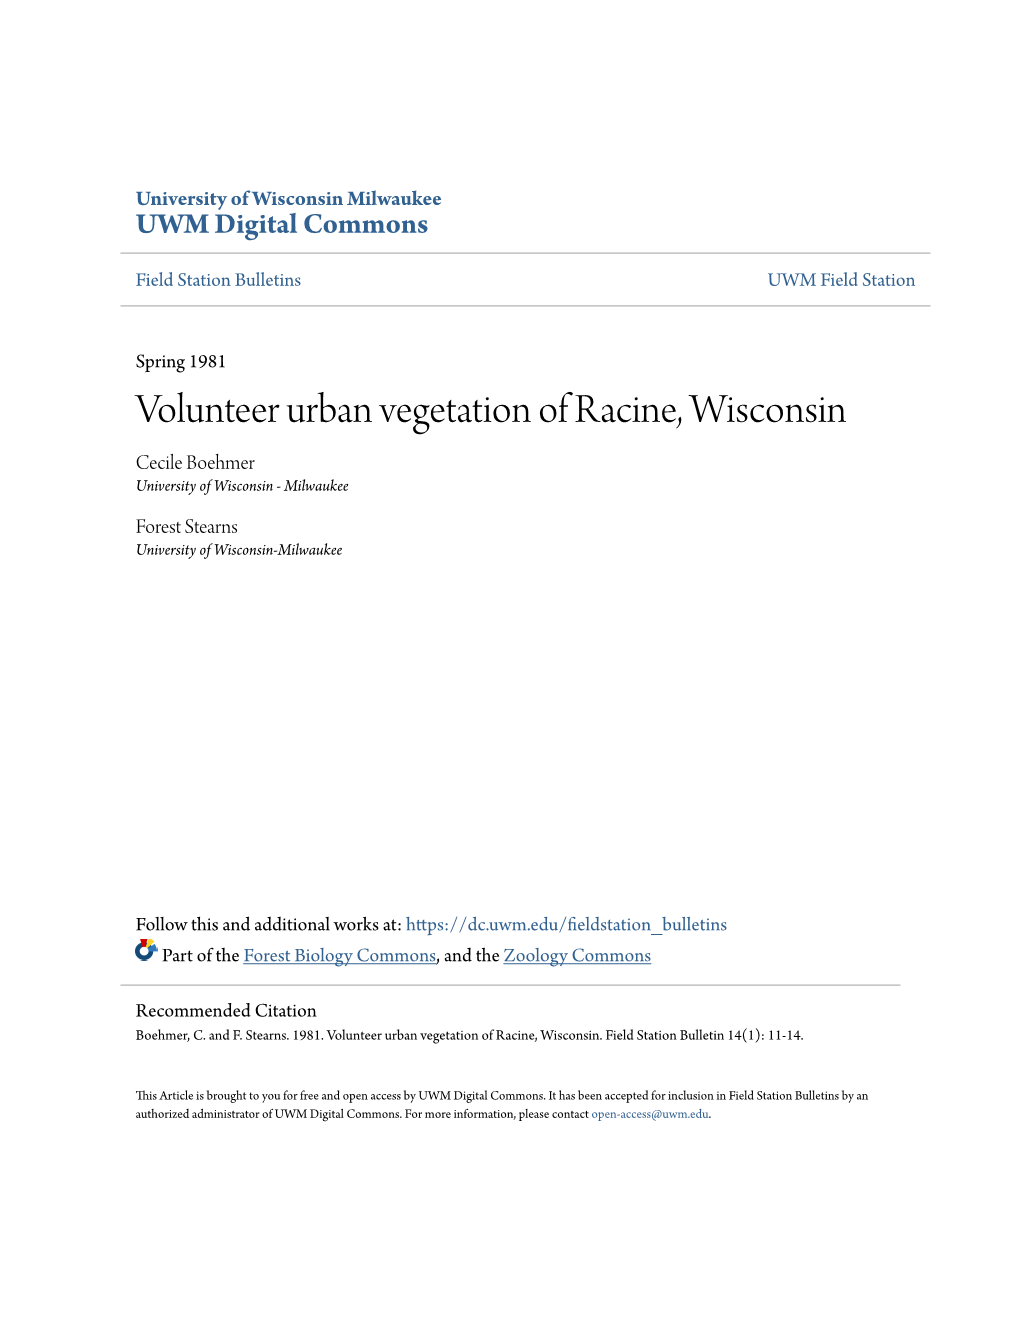 Volunteer Urban Vegetation of Racine, Wisconsin Cecile Boehmer University of Wisconsin - Milwaukee